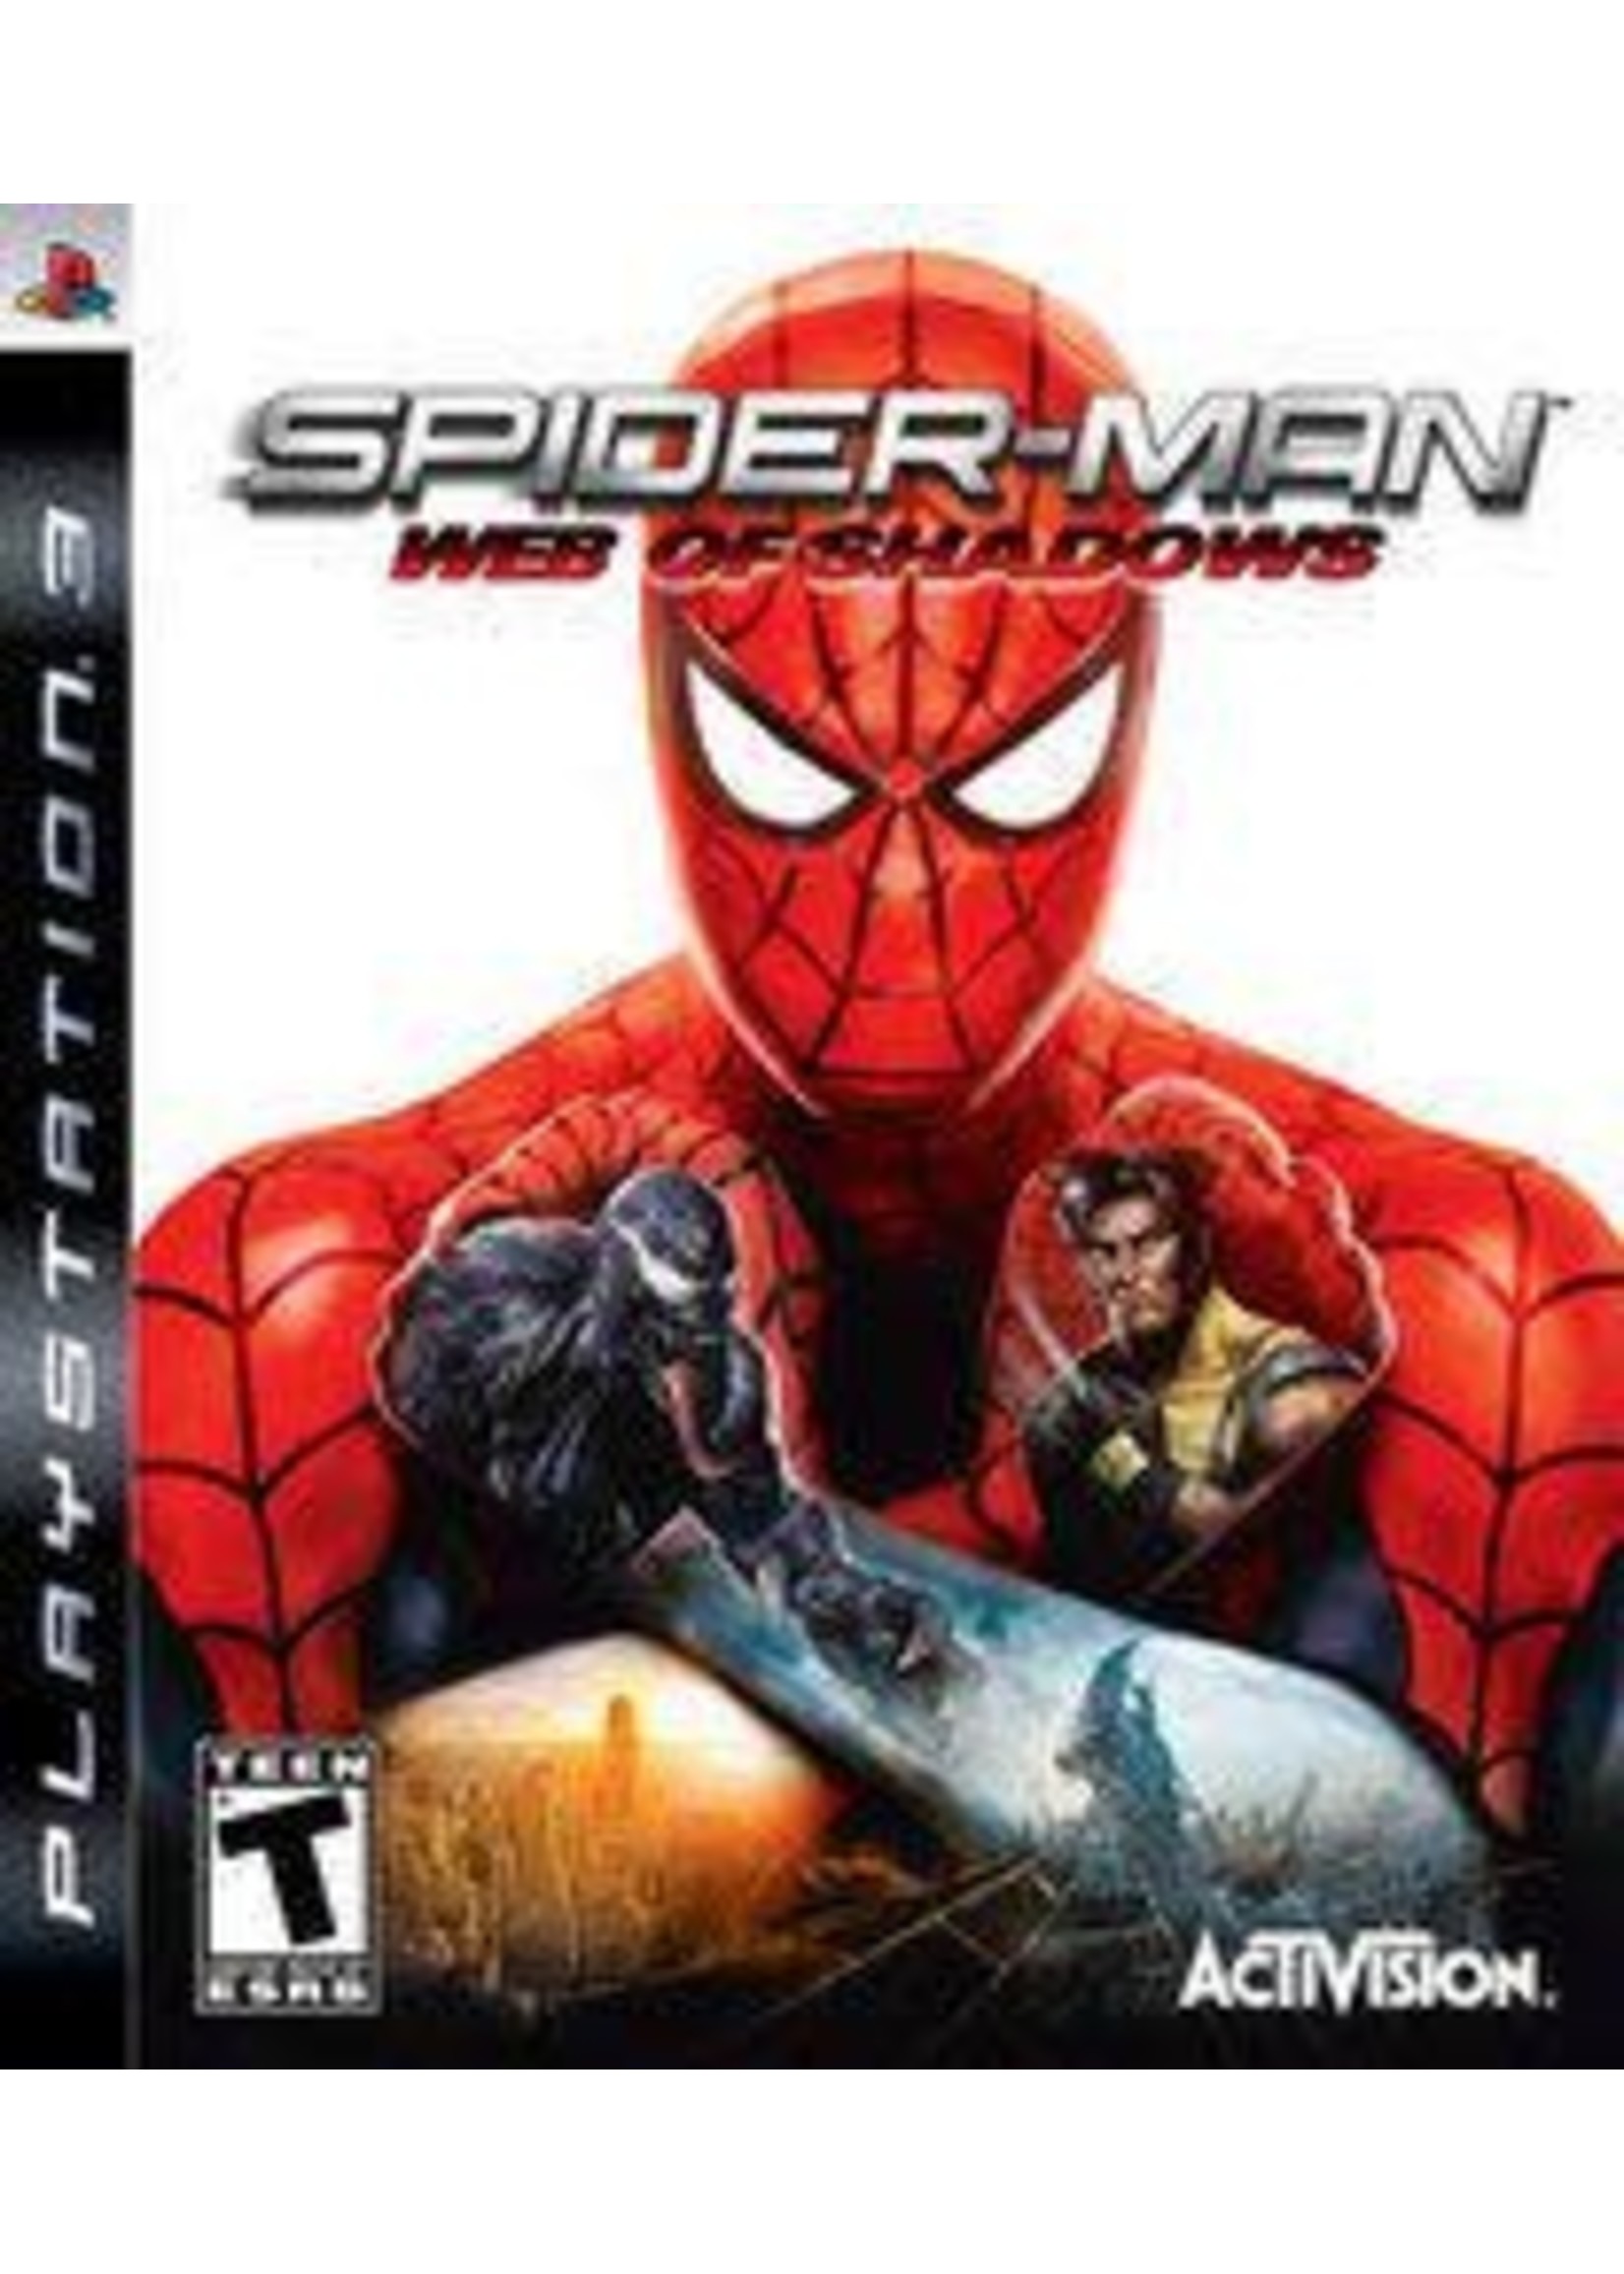 Spiderman Web Of Shadows PS3 (CIB)